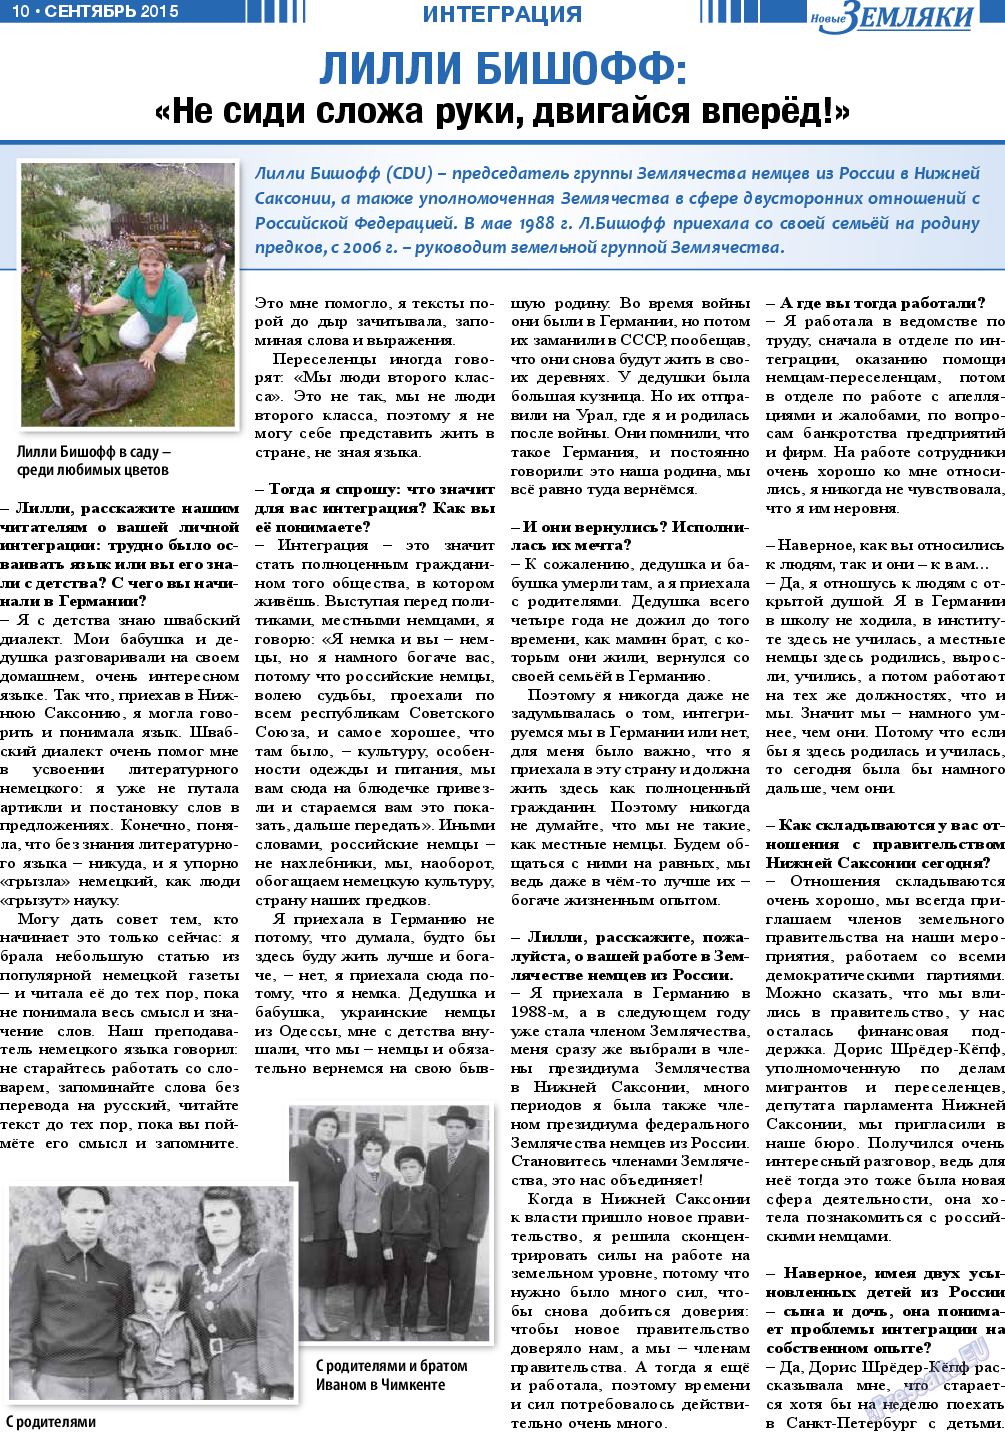 Новые Земляки, газета. 2015 №9 стр.10